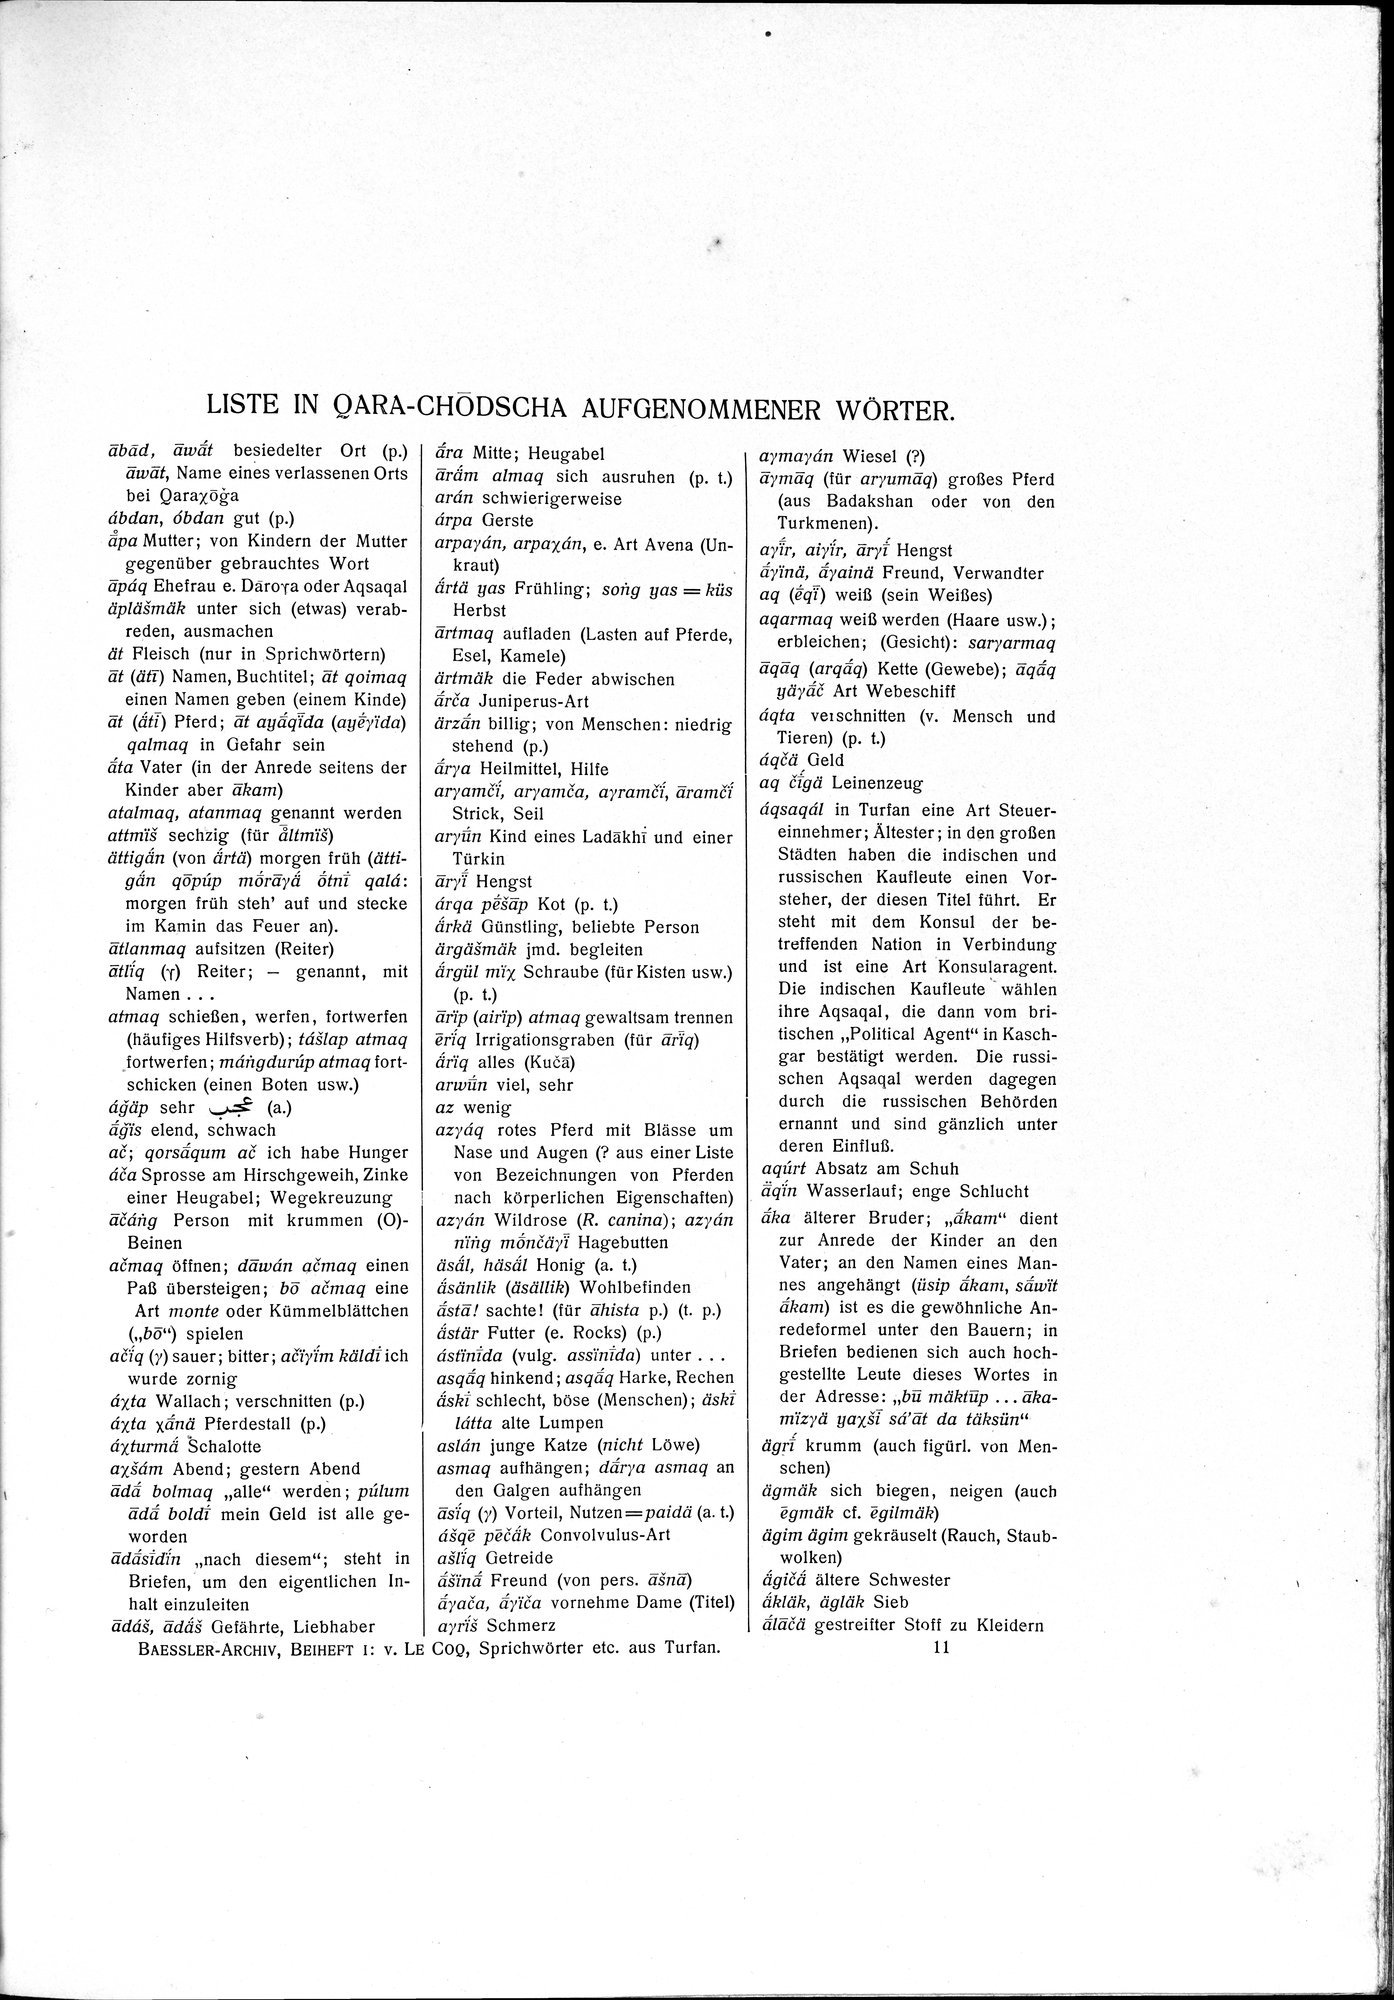 Sprichwörter und Lieder aus der Gegend von Turfan : vol.1 / Page 95 (Grayscale High Resolution Image)